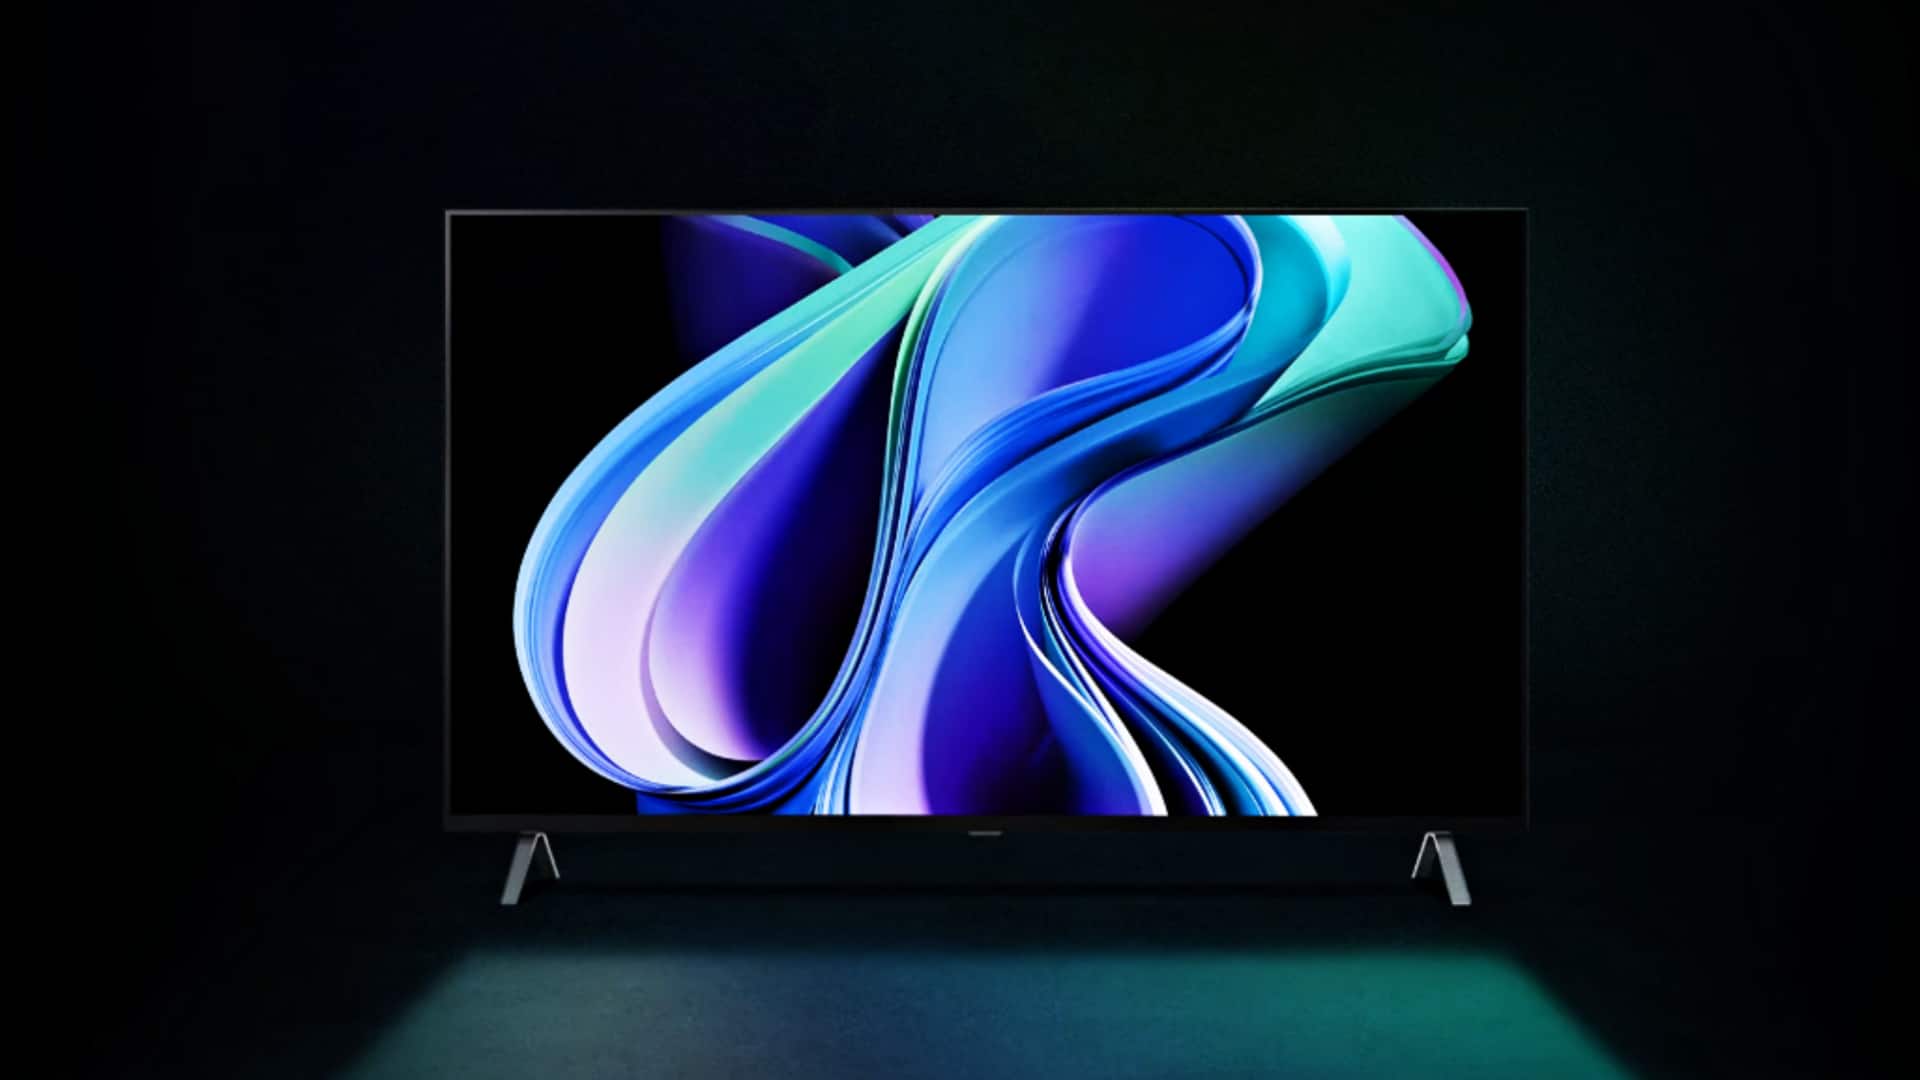 LG's 65-inch 4K OLED TV is 35% off on Flipkart